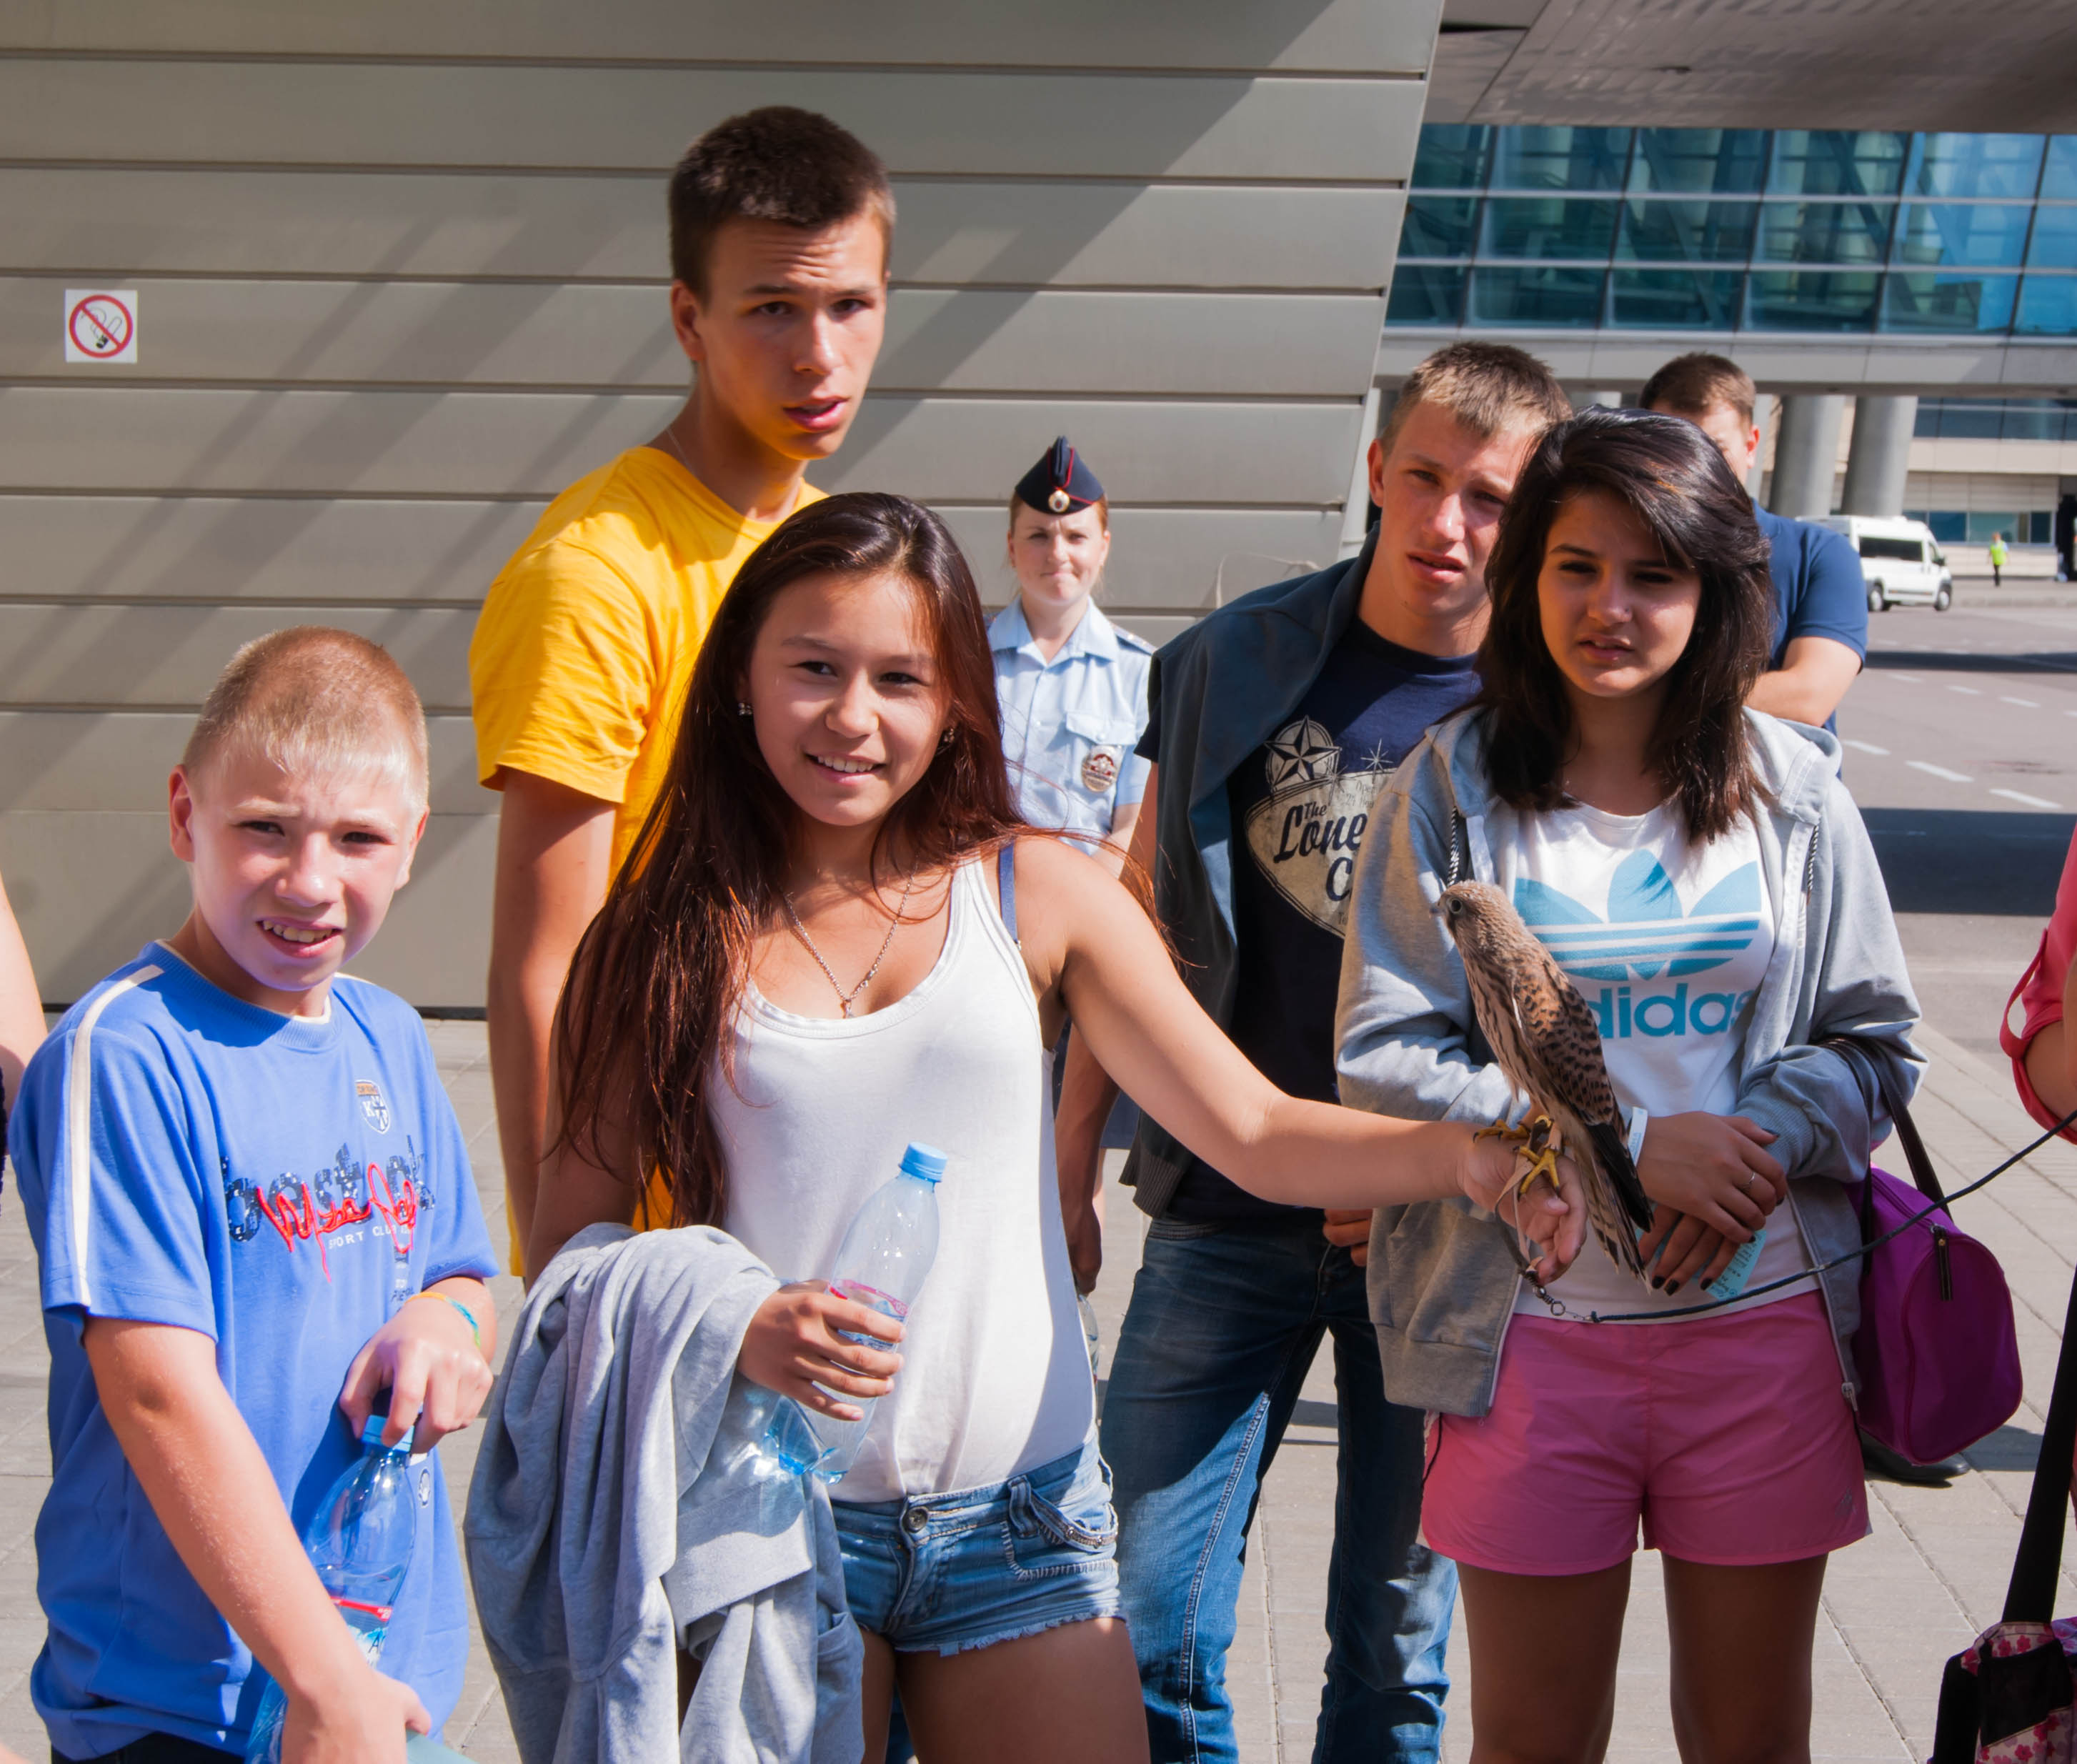 В аэропорту Внуково прошла благотворительная акция «Покажи Родину детям» | Международный аэропорт Внуково